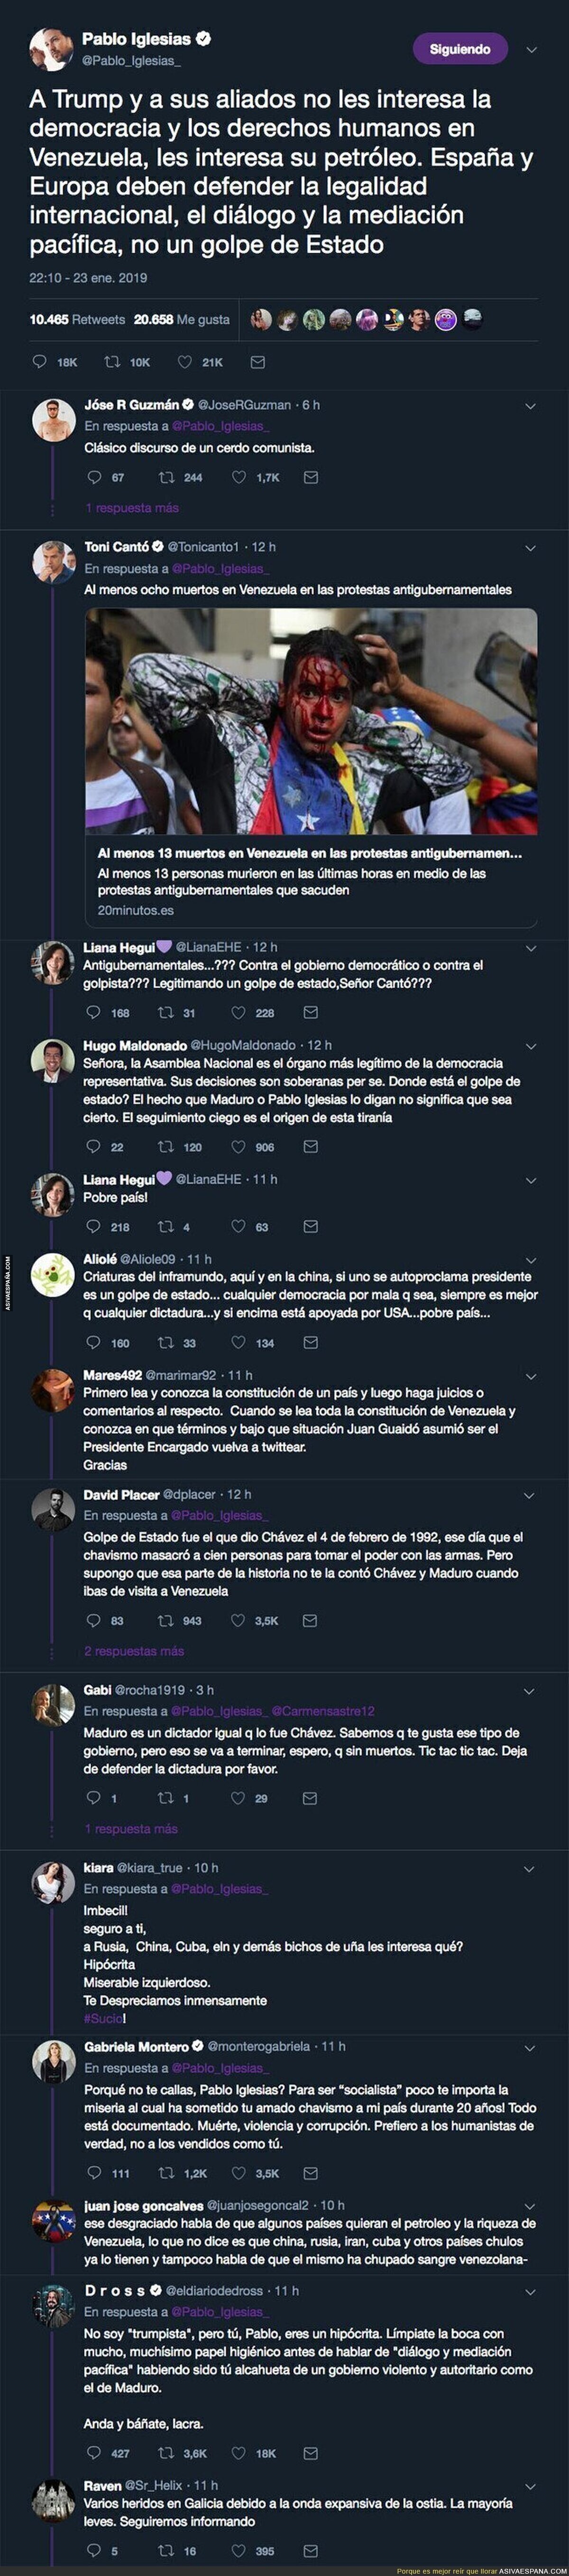 Pablo Iglesias denuncia un golpe de estado en Venezuela y todo Twitter se le echa encima